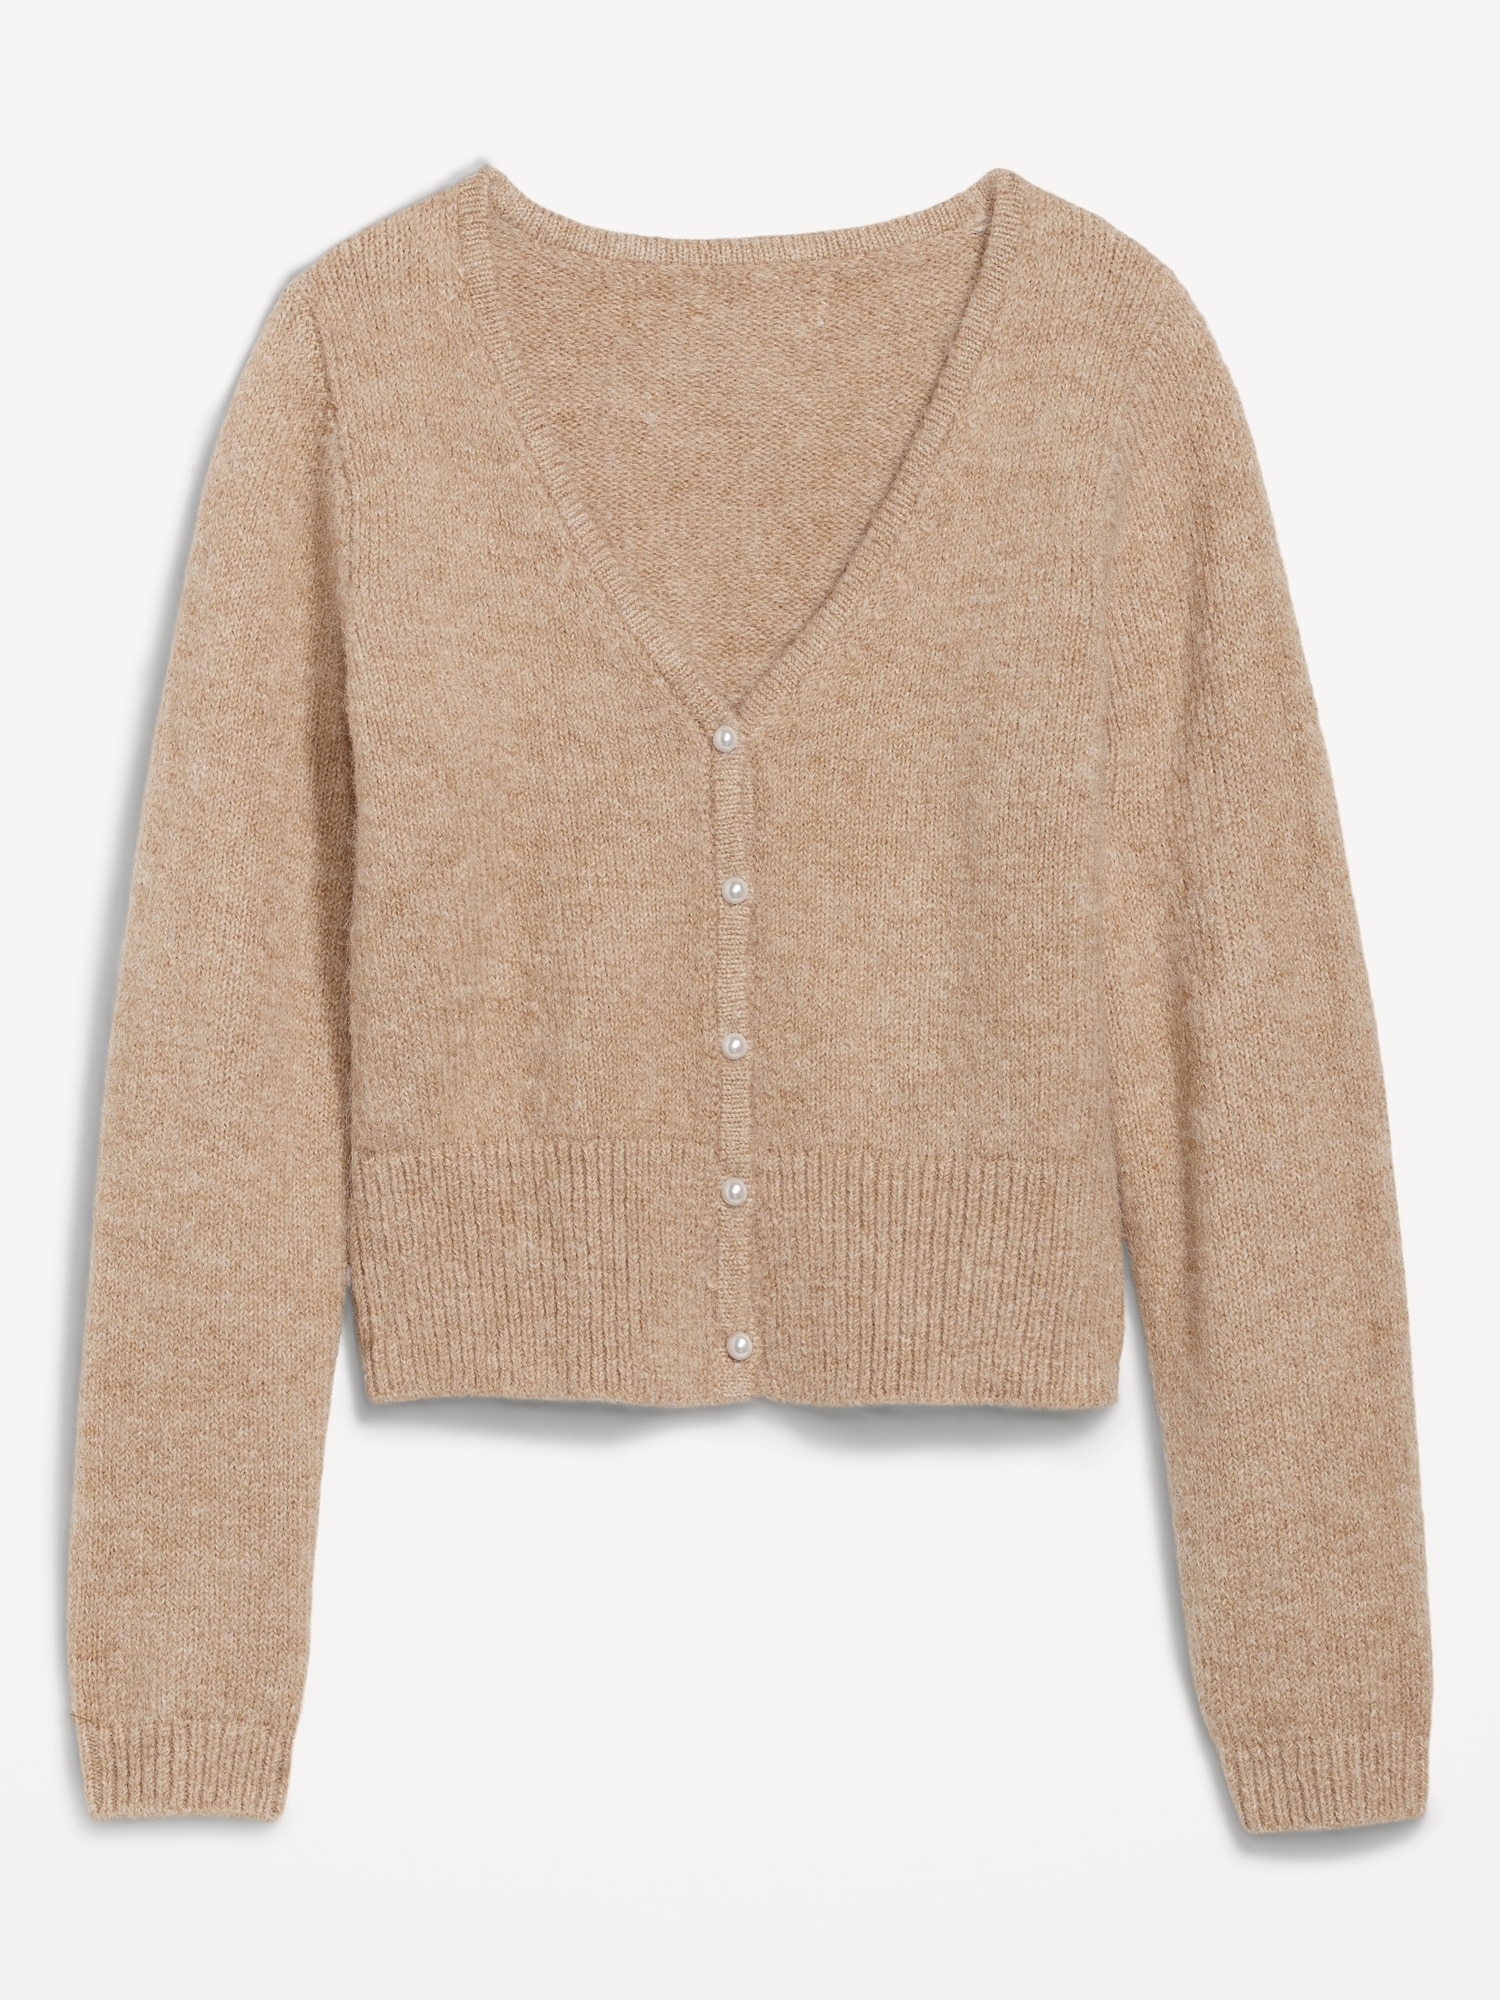 zuiger uitvinding Kwaadaardig Cozy Cardigan Sweater for Women | Old Navy